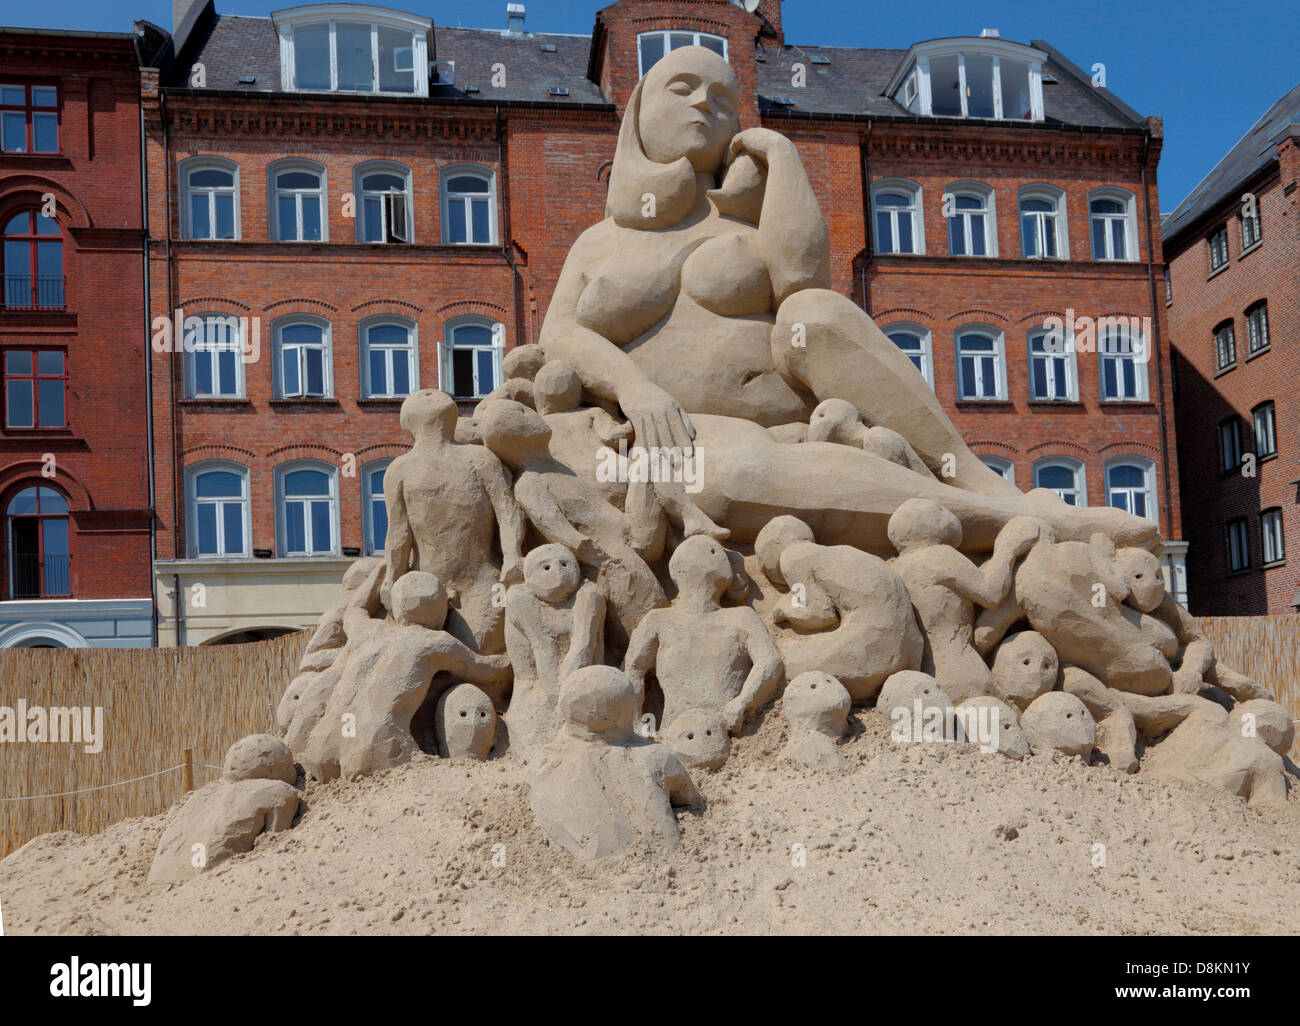 Copenhague, Danemark. Le 30 mai 2013. 17 sculptures de sable jusqu'à 10 mètres de hauteur construit à partir de 3 000 tonnes de sable de sable par 30 artistes internationaux sont à l'affiche jusqu'au 25 août à Havnegade dans le port de Copenhague dans l'un des plus spectaculaires événements sculptures de sable dans le nord de l'Europe. 'Big Mama' par Ulrich Baentsch, Allemagne. La femme est confortablement assis sur le dessus d'un grand nombre de petits hommes ramper autour d'elle. La sculpture est de l'ambiguïté de la femme du point de vue masculin. Il y a une beauté et de séduction, mais il pourrait aussi être quelque chose d'effrayant à son sujet. © Niels Quist / Alamy Liv Banque D'Images